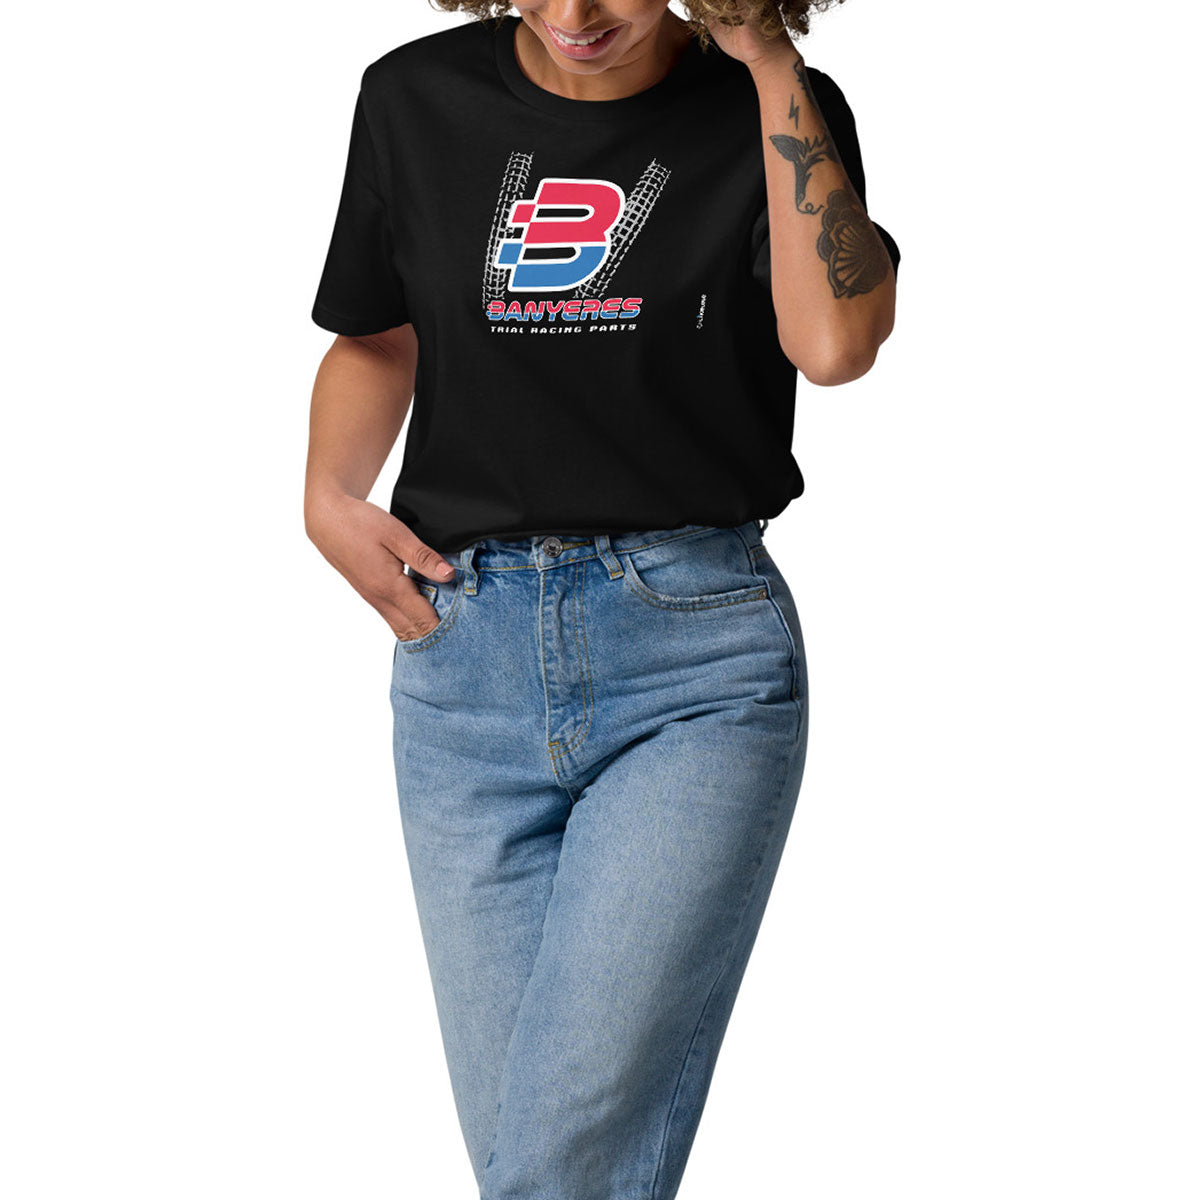 BANYERES TRIAL RACING PARTS · Camiseta m/corta·Mujer/Unisex · Medium·Negro-152c2